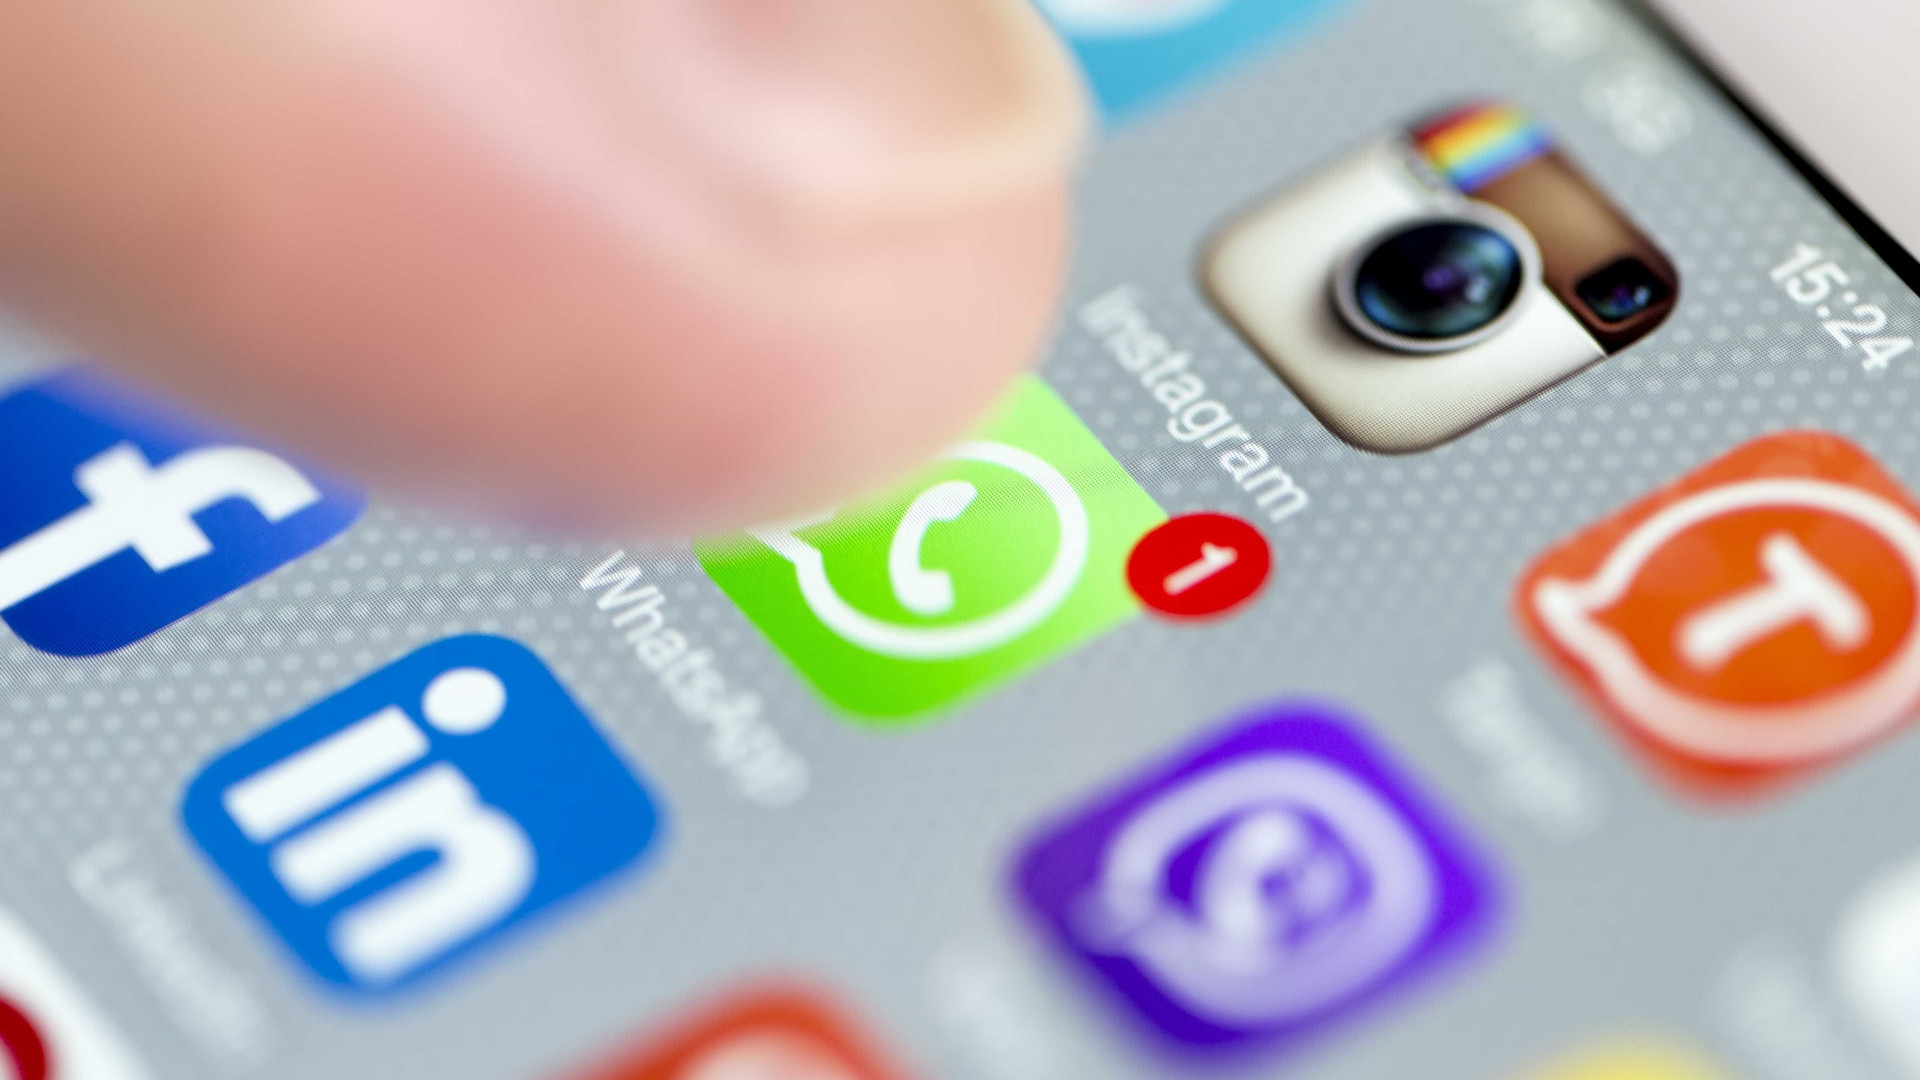 Truque permite entrar no WhatsApp em celulares sem chip